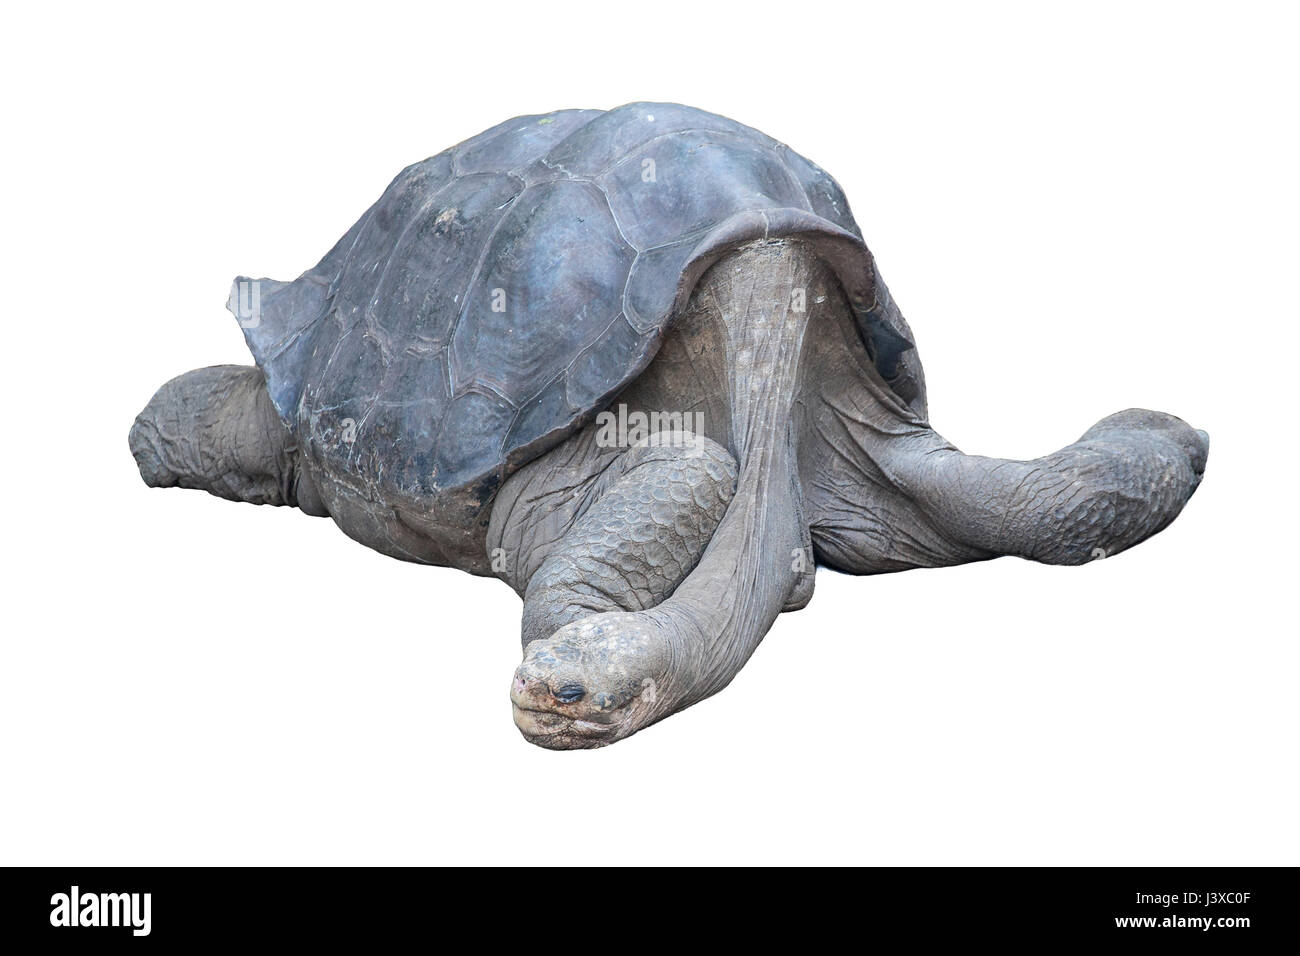 Lonesome George, friedlich ruht. Er war der letzte der Pinta Insel Galapagos Schildkröte. Auf weißem Hintergrund fotografiert. Stockfoto